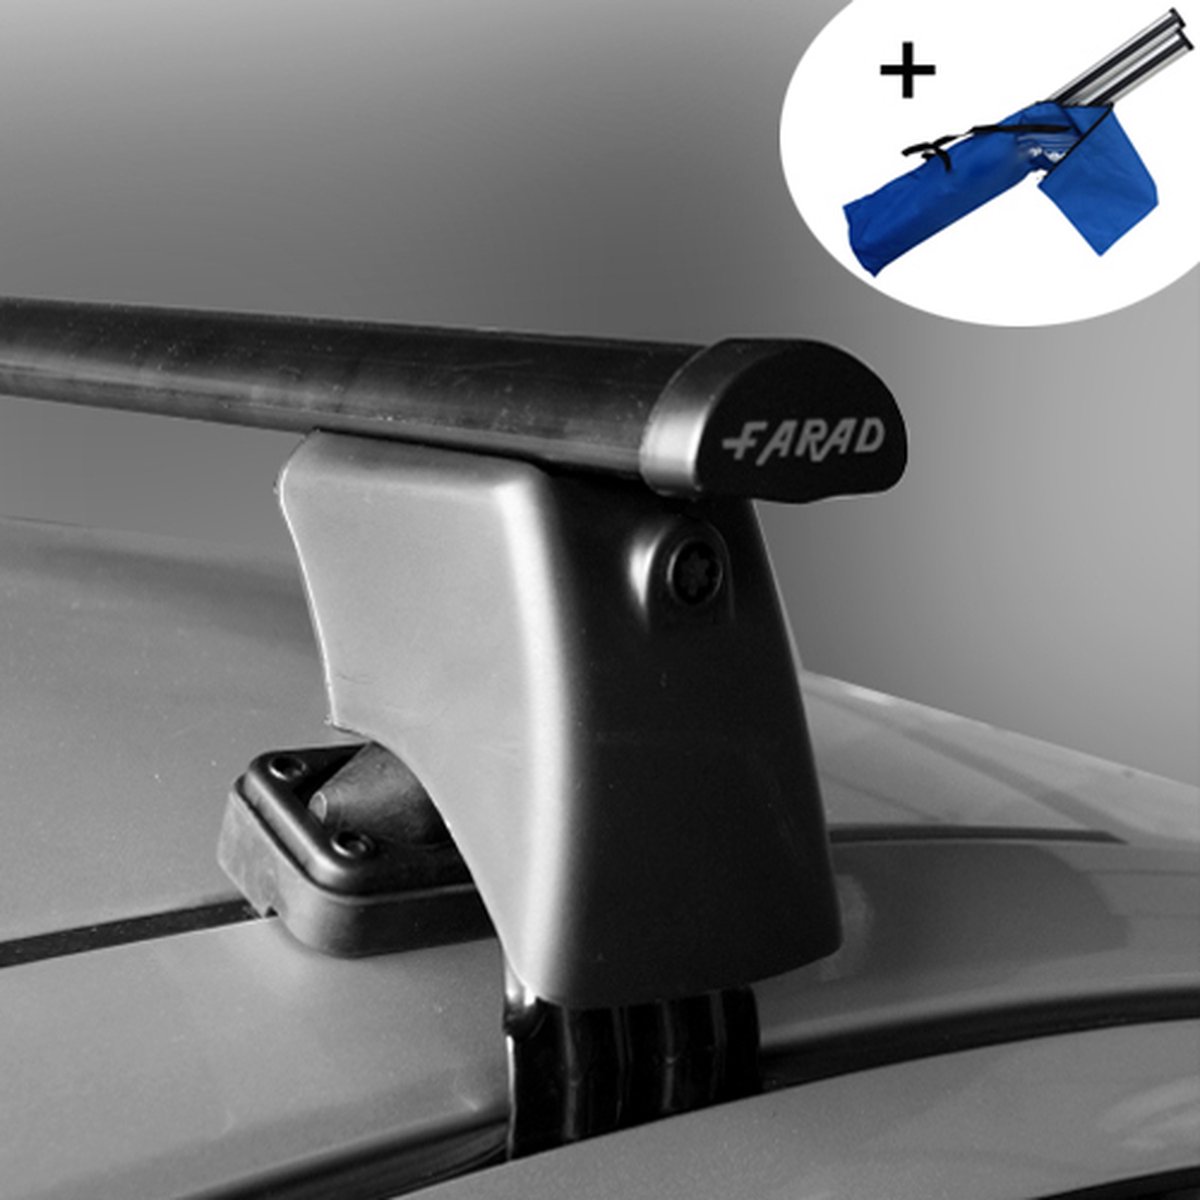 Dakdragers geschikt voor Fiat Punto 3 deurs hatchback vanaf 2012 - Staal - inclusief dakdrager opbergtas